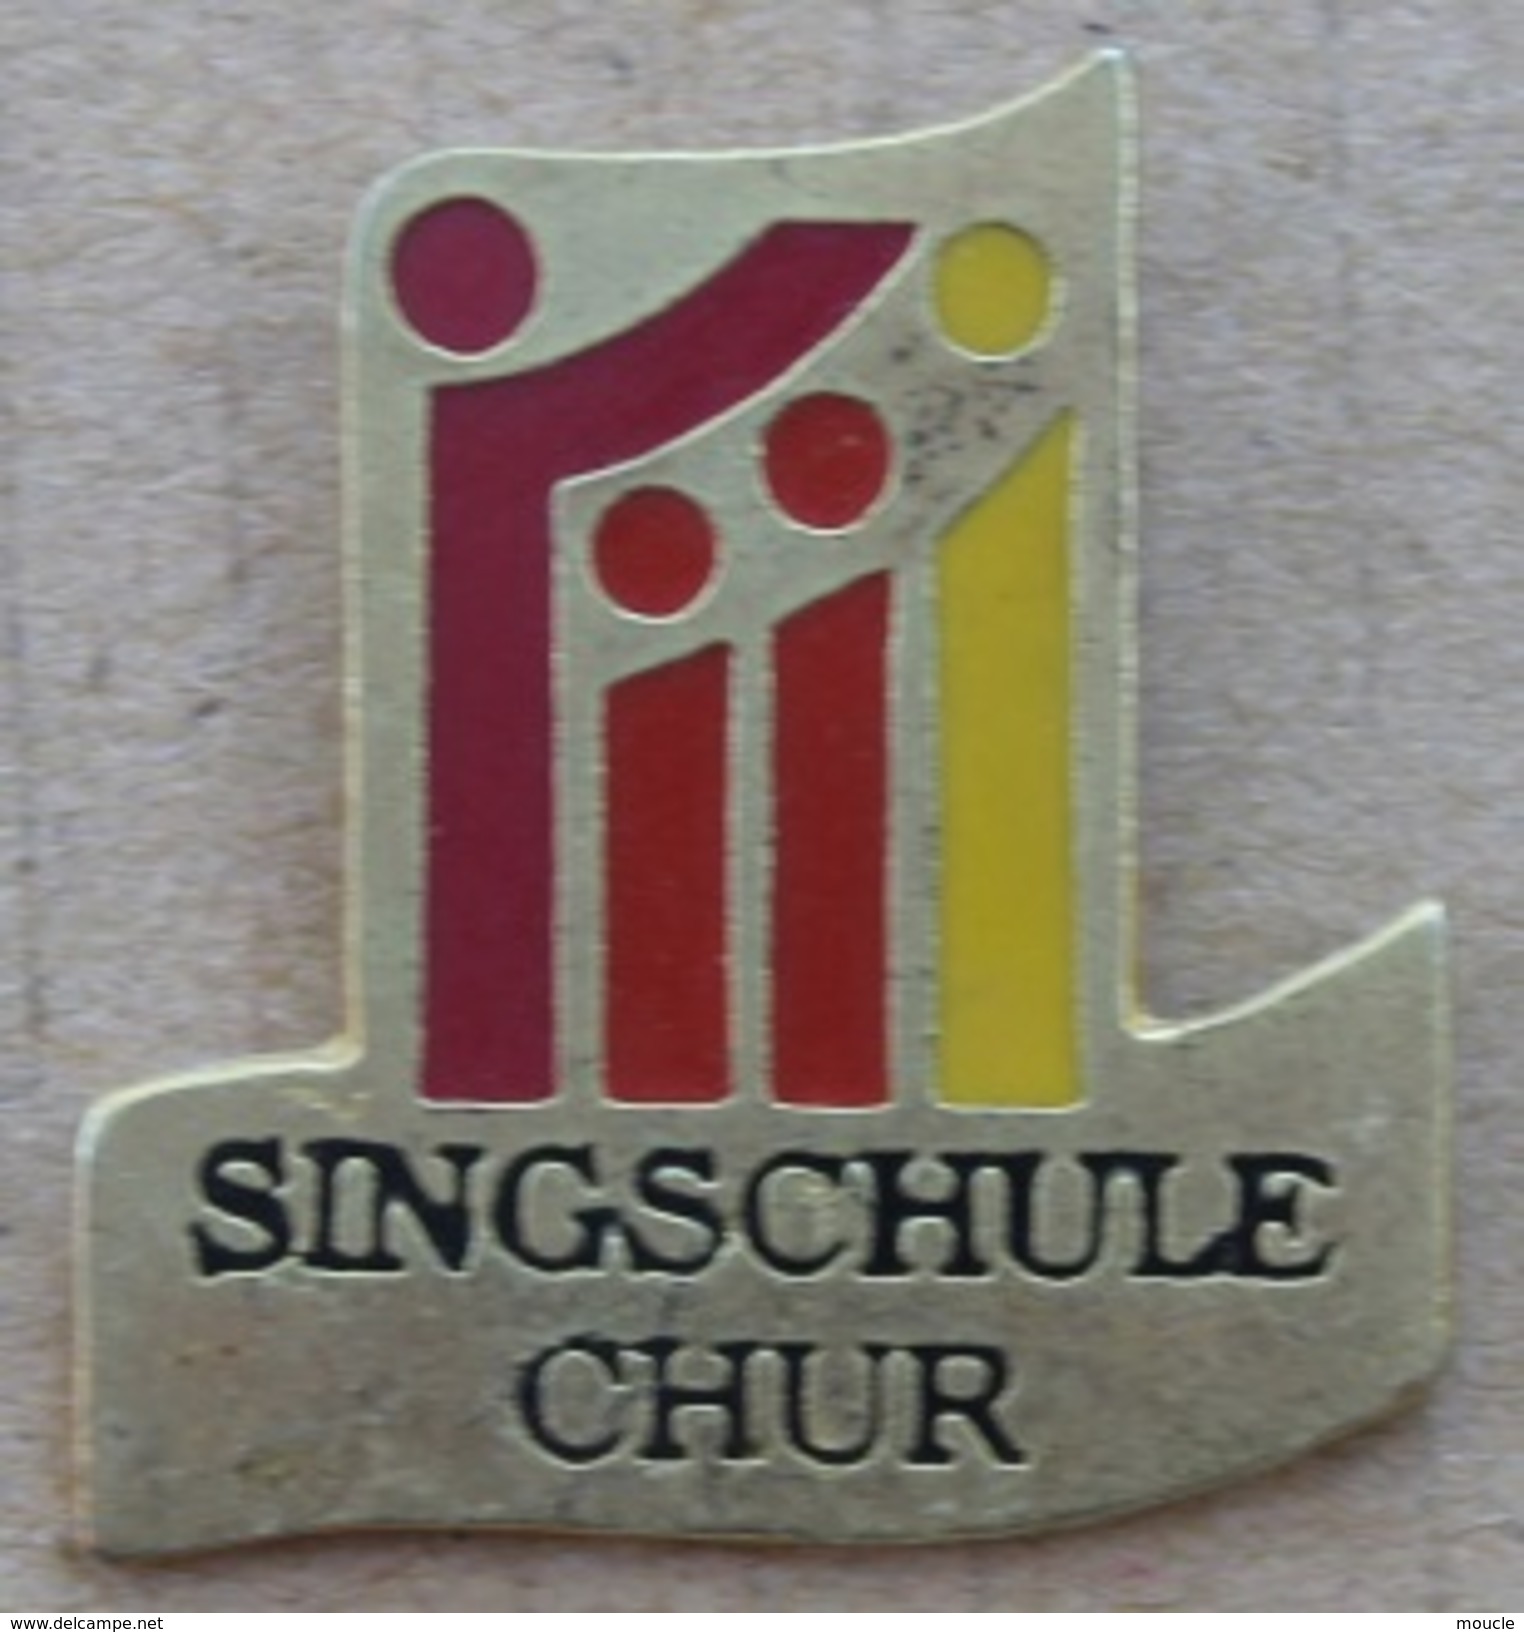 SINGSCHULE CHUR - ECOLE DE CHANTS - COIRE - CANTON DES GRISONS - SUISSE - SCHWEIZ  -   (18) - Musica